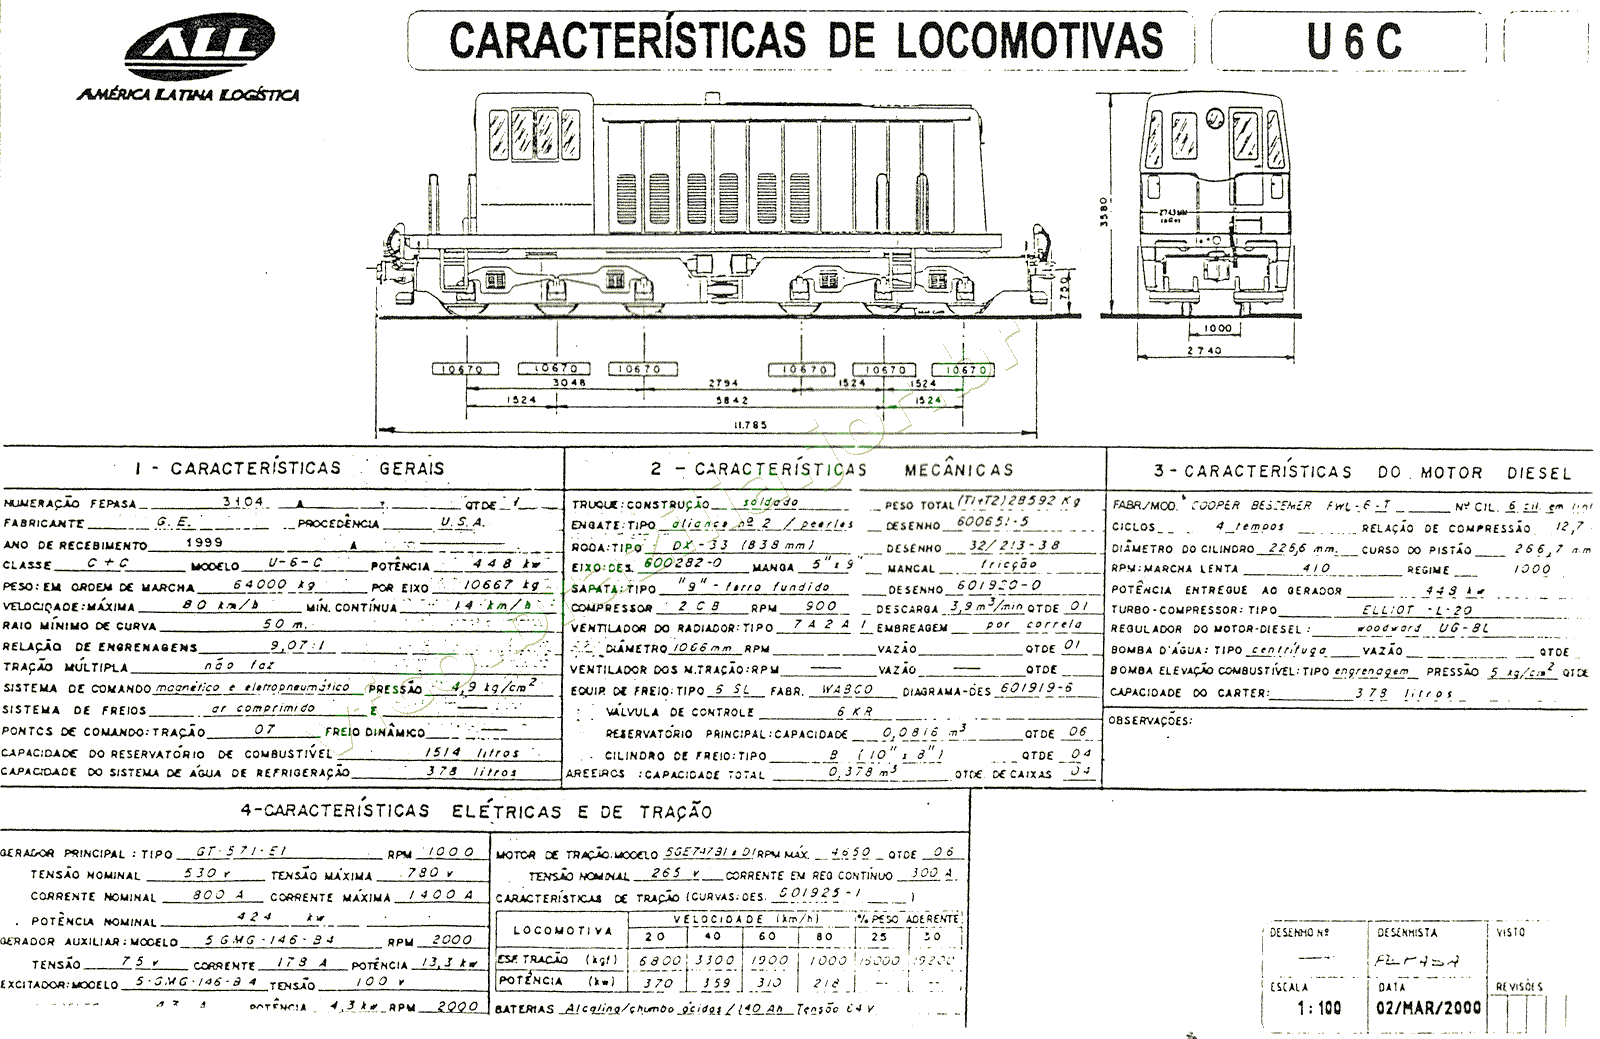 Planta e especificações da Locomotiva U6C da ferrovia ALL